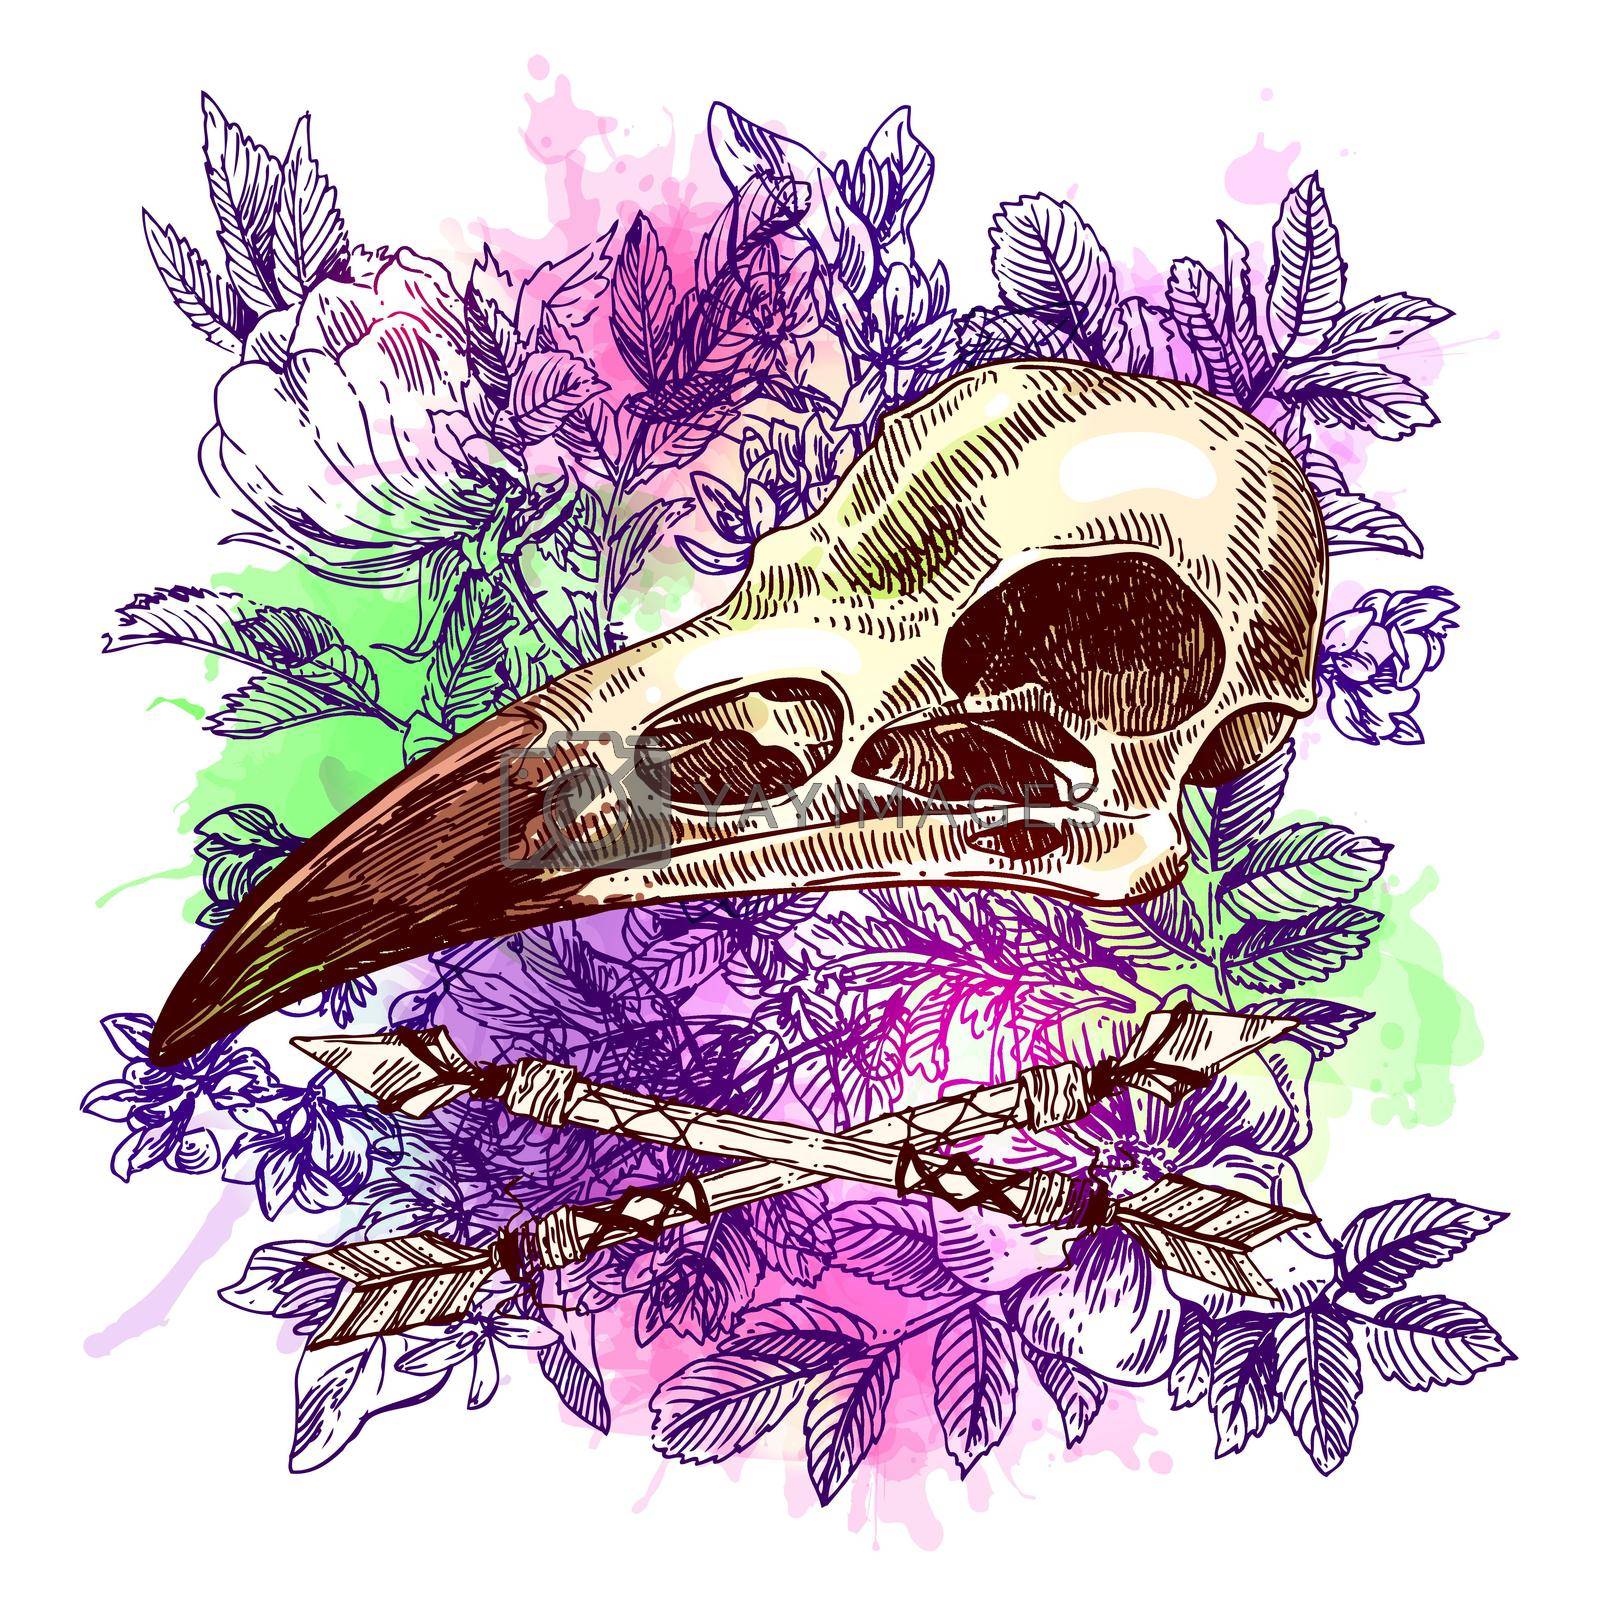 Royalty free image of illustration animal skull by steshnikova